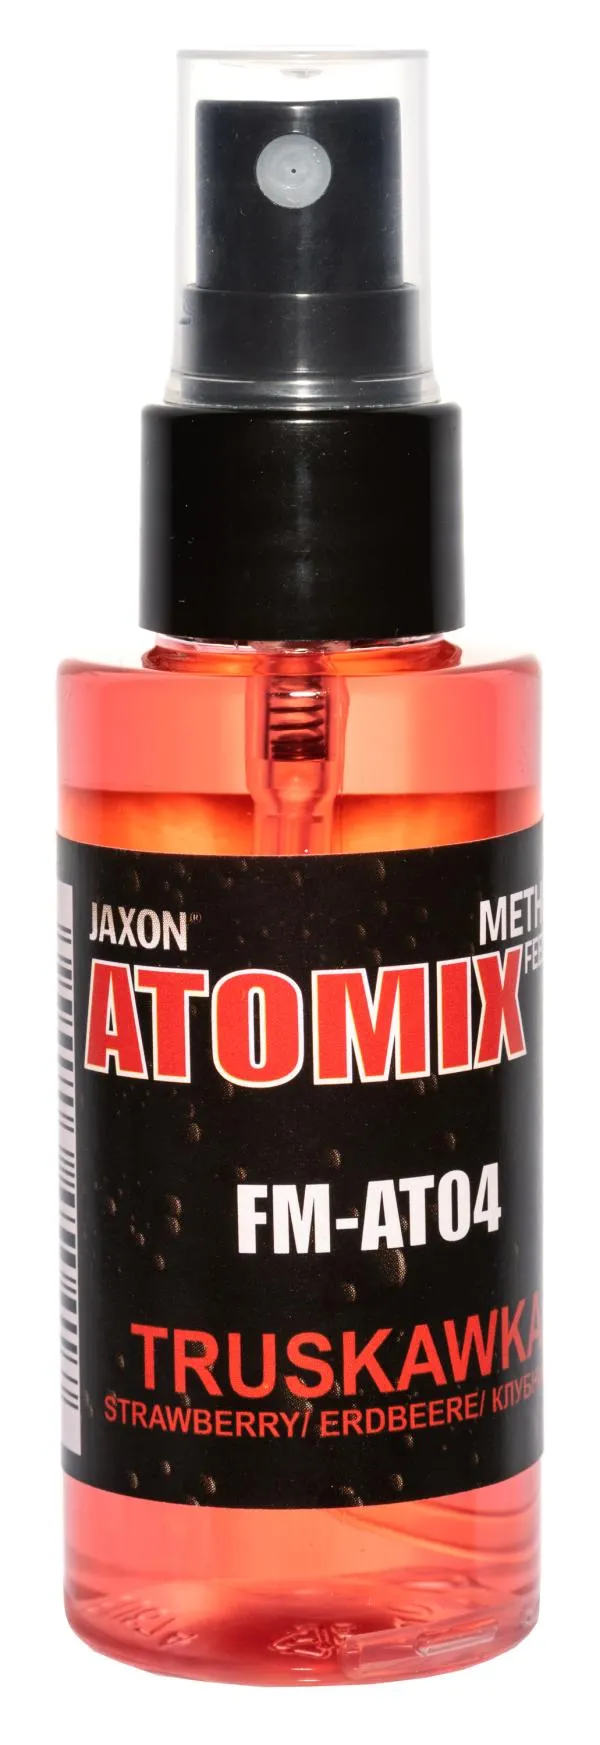 NextFish - Horgász webshop és horgászbolt - JAXON ATOMIX - EPER 50g aroma